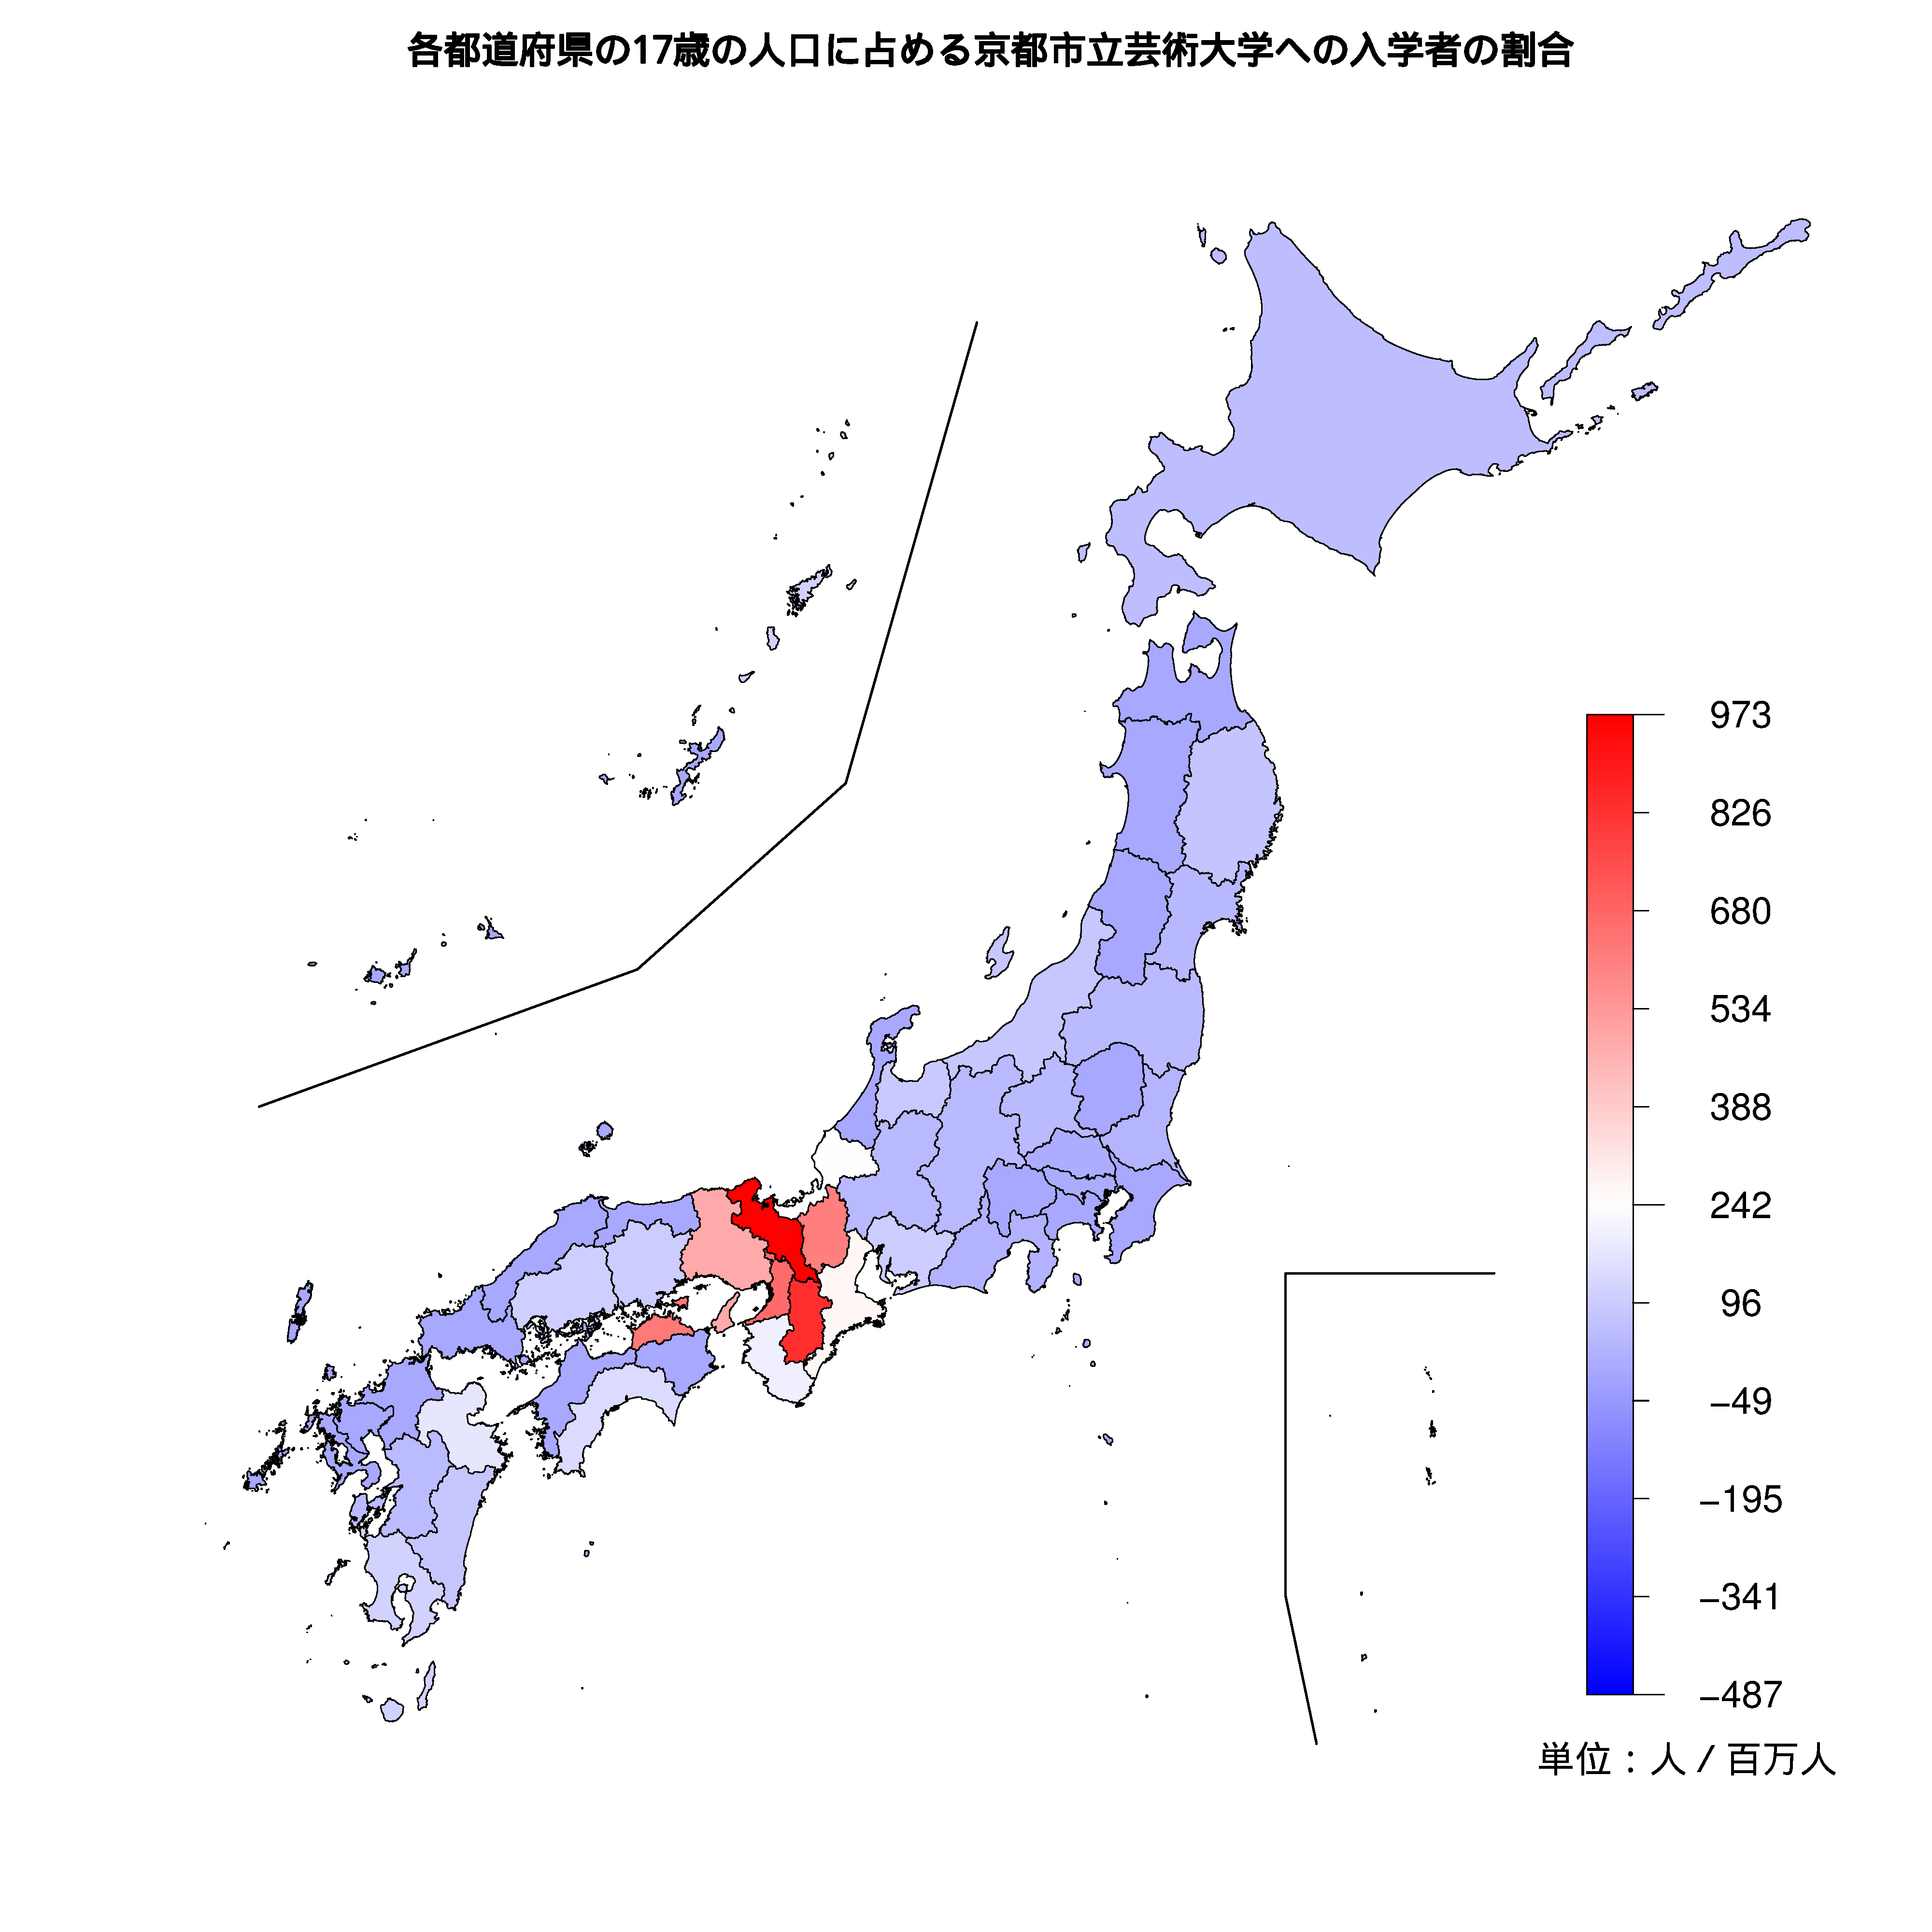 京都市立芸術大学への入学者が多い都道府県の色分け地図